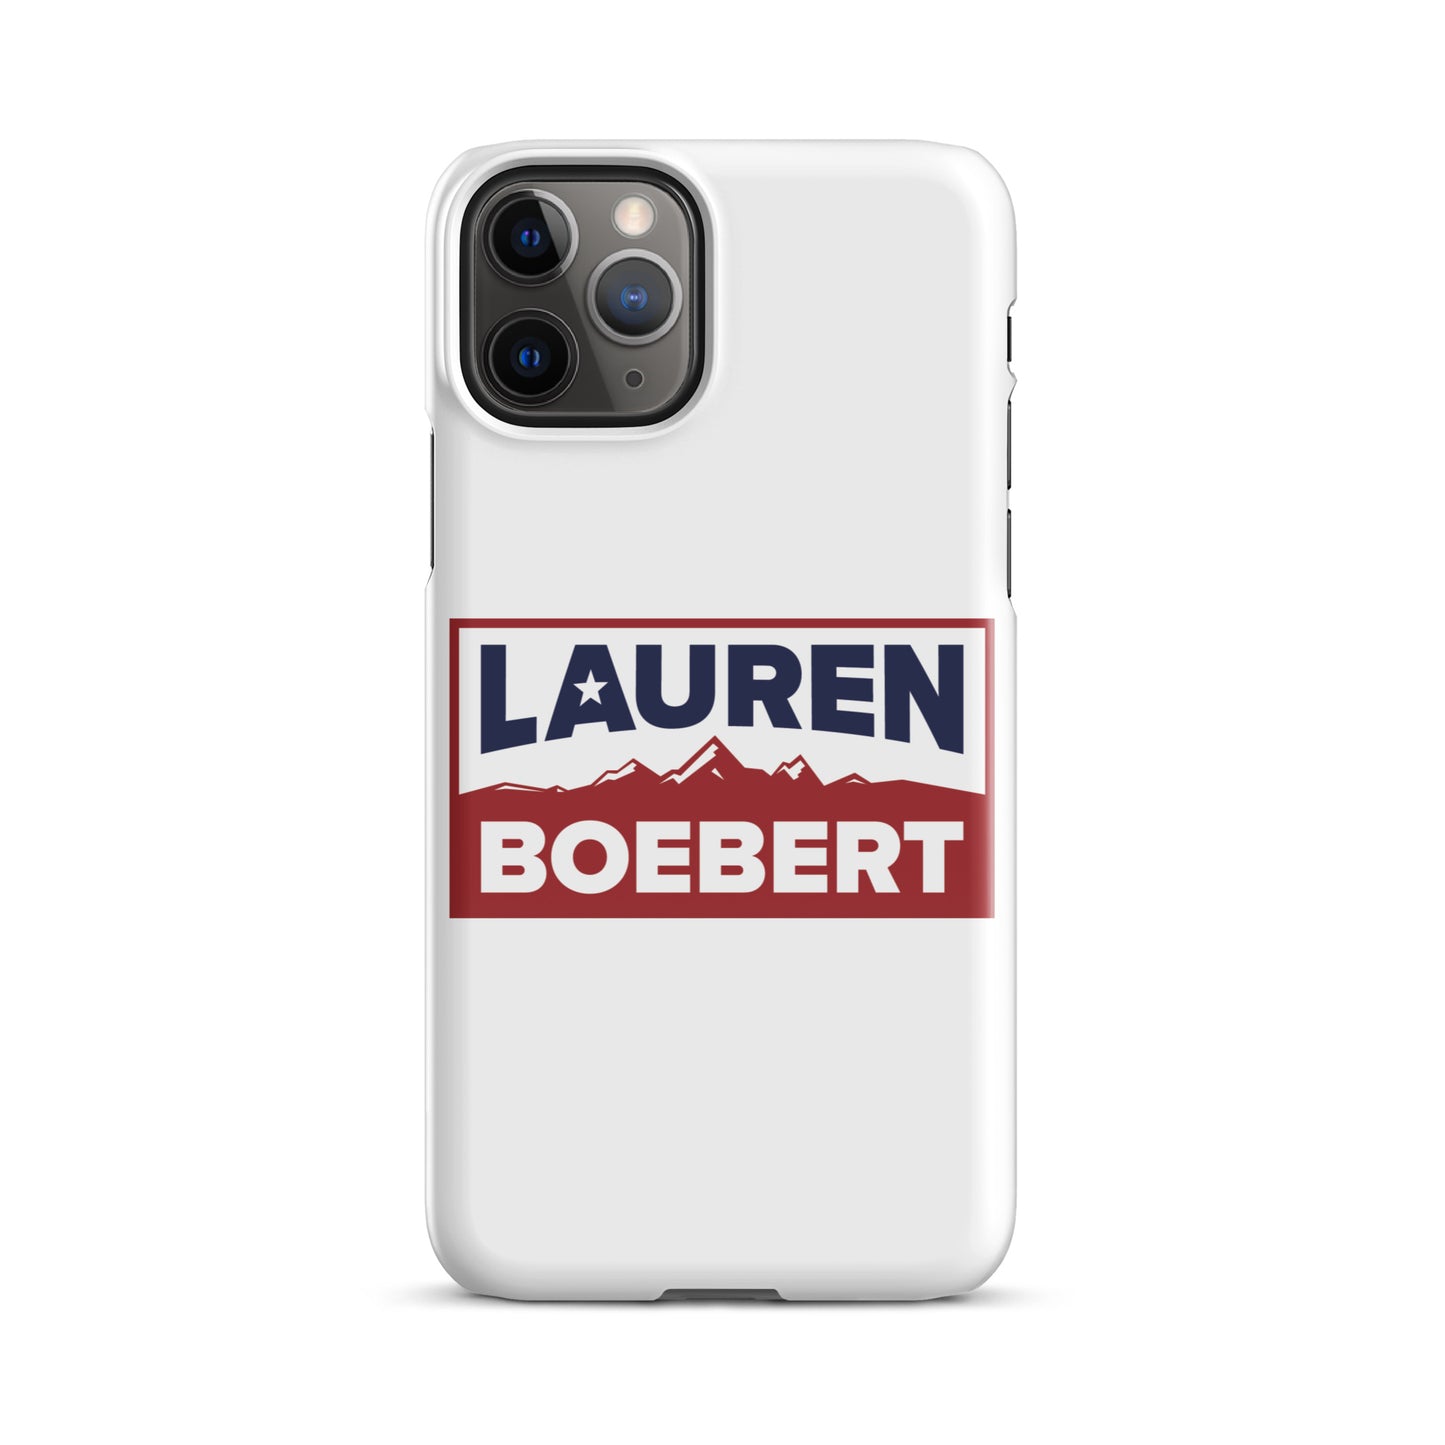 Lauren Boebert iPhone Case